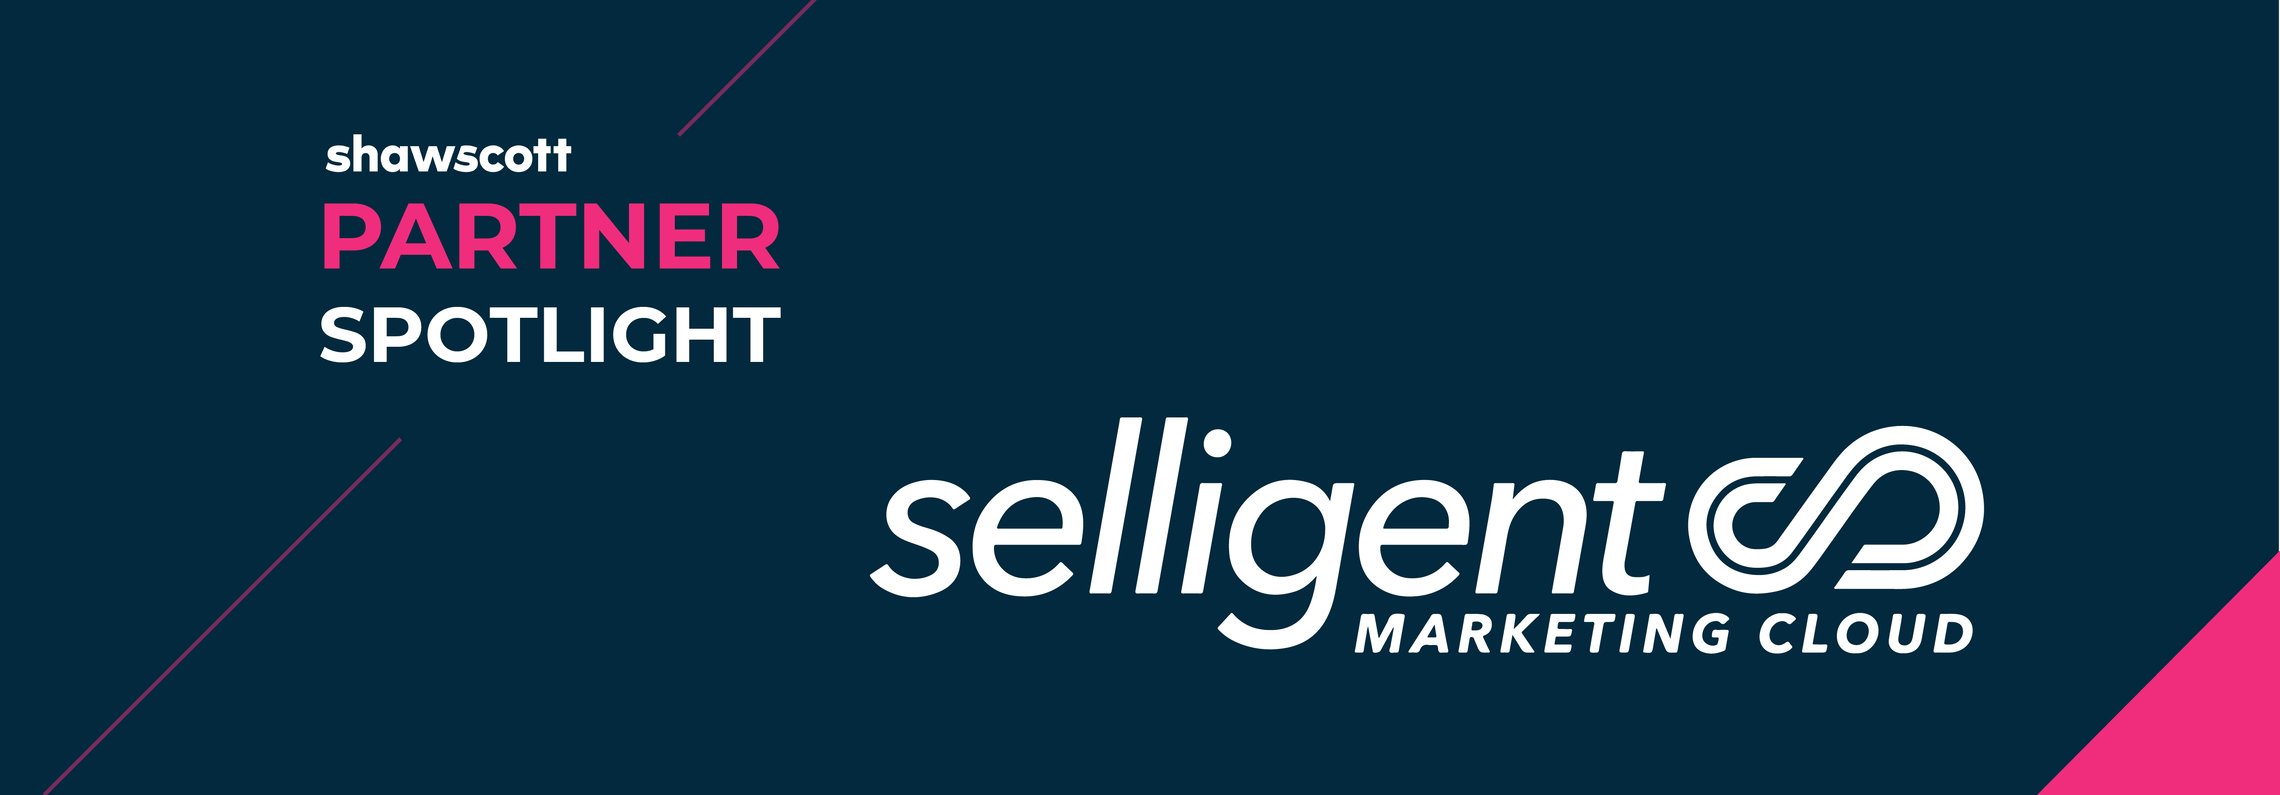 Partner Spotlight - Selligent Marketing Cloud